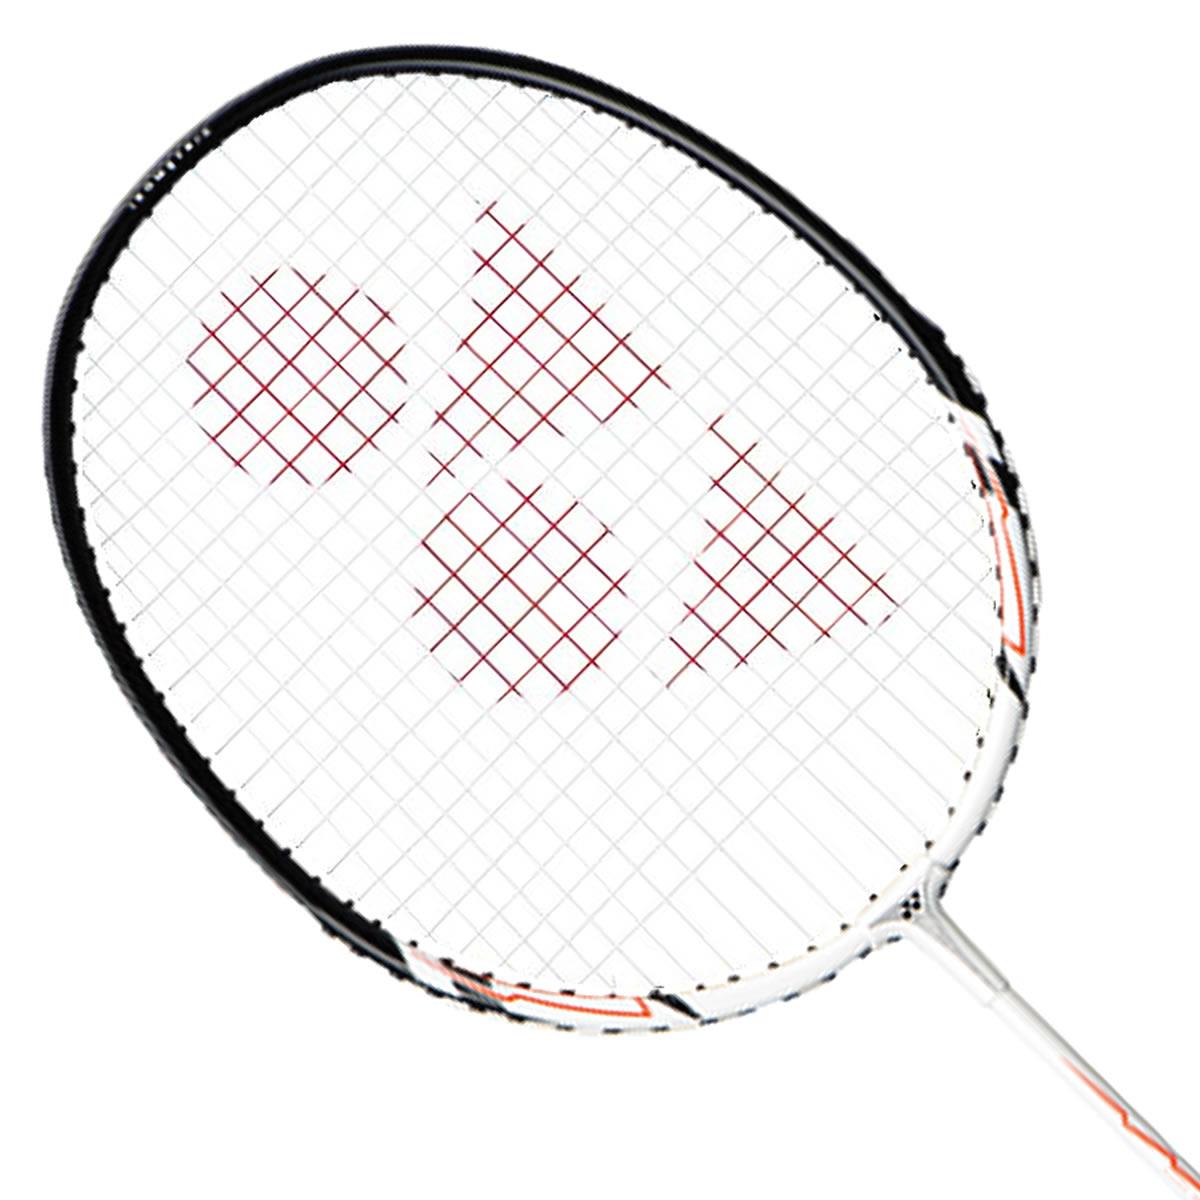 Yonex Muscle Power 2 Badminton Racket - White